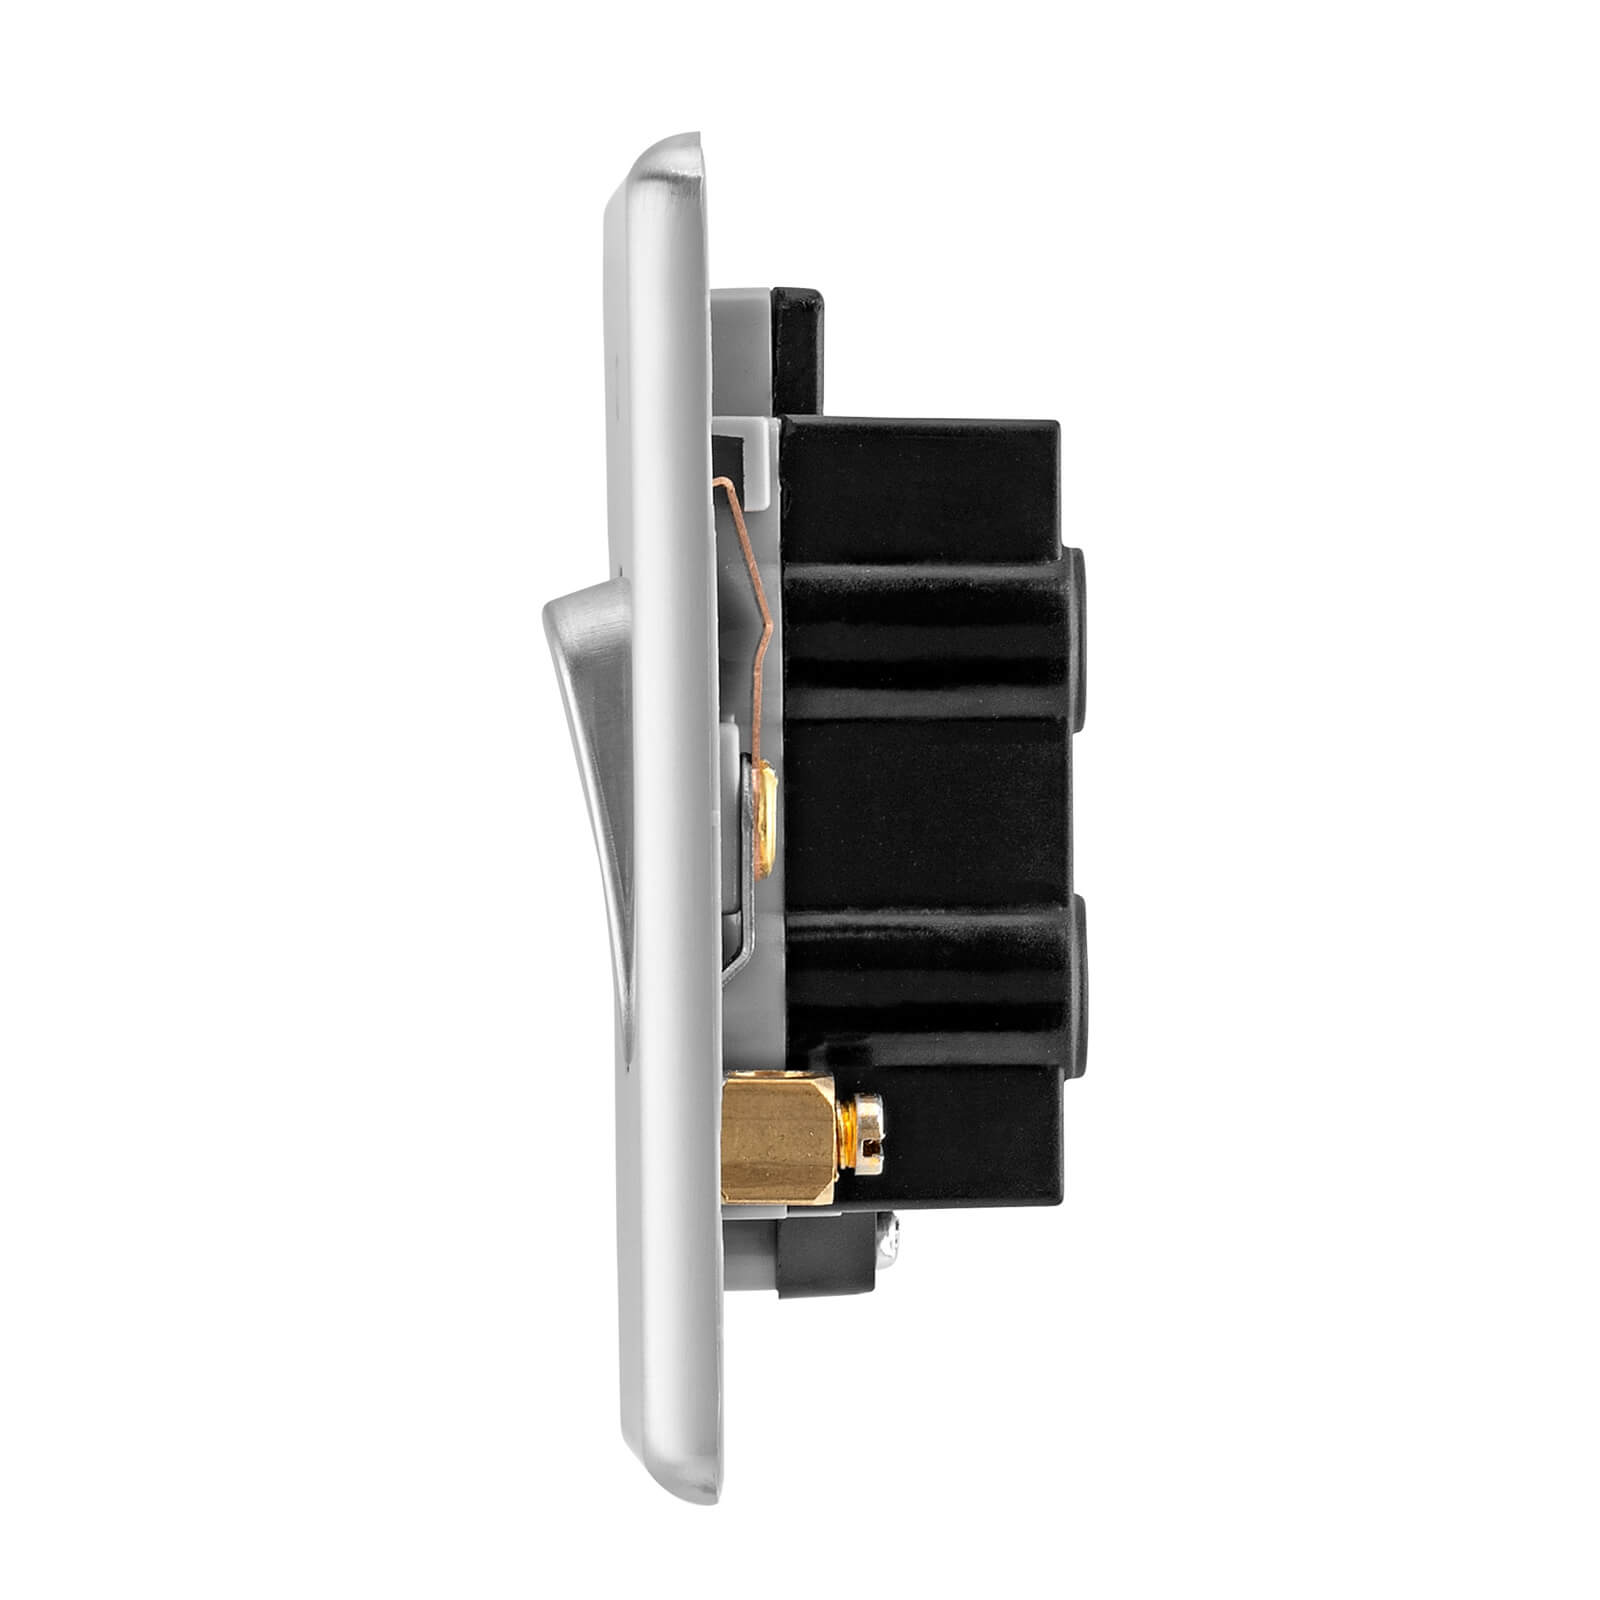 Arlec Fusion 50A 1Gang Double pole Polished Chrome Single Switch